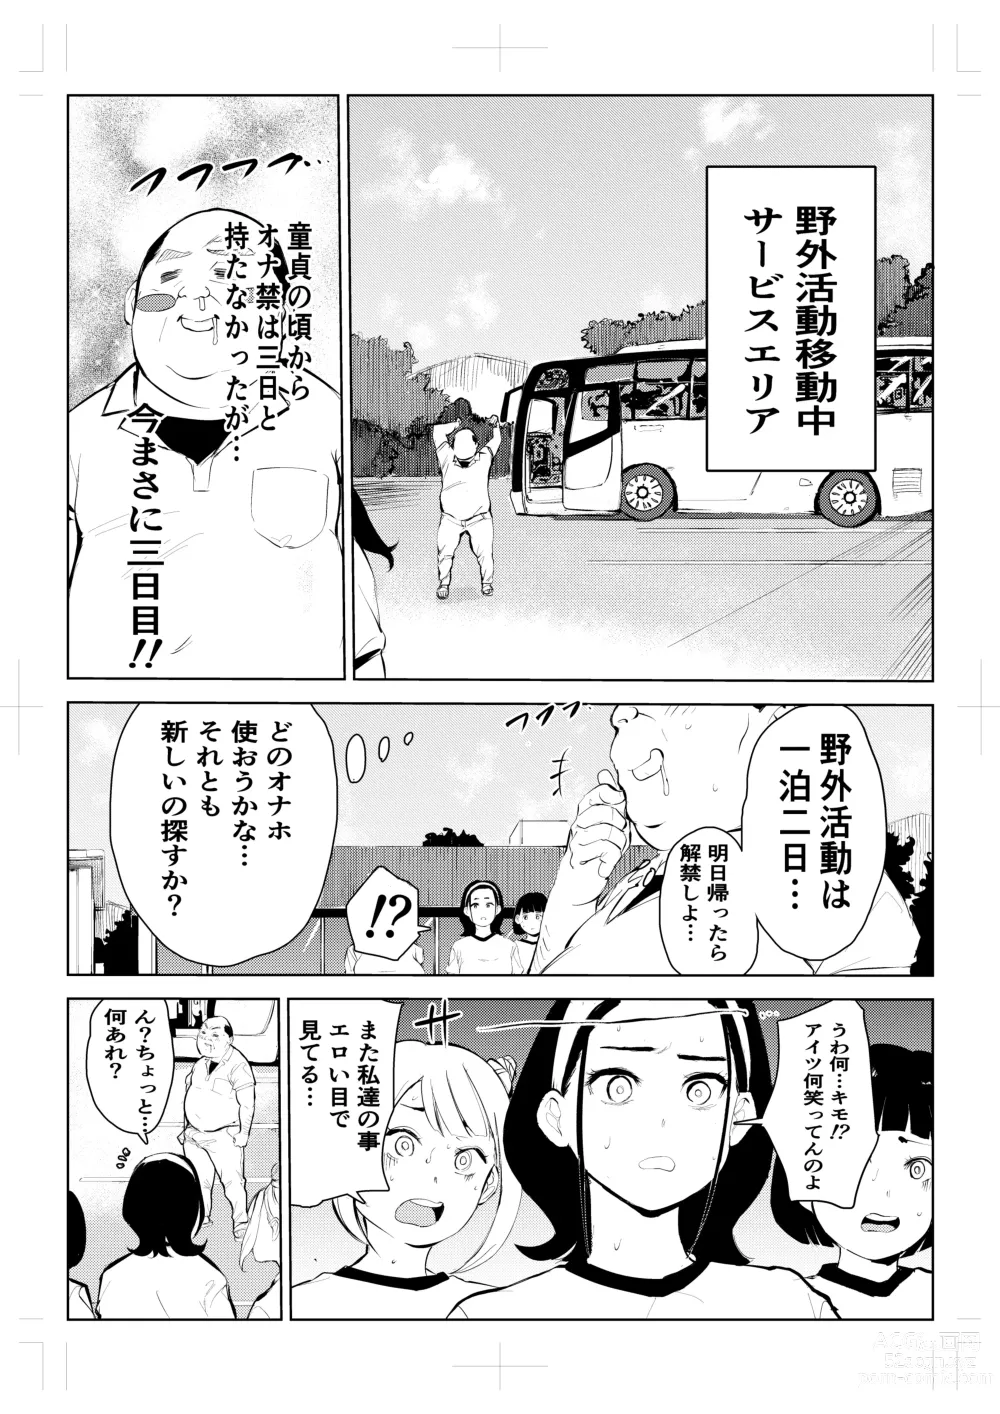 Page 10 of doujinshi 40-sai no Mahoutsukai 4